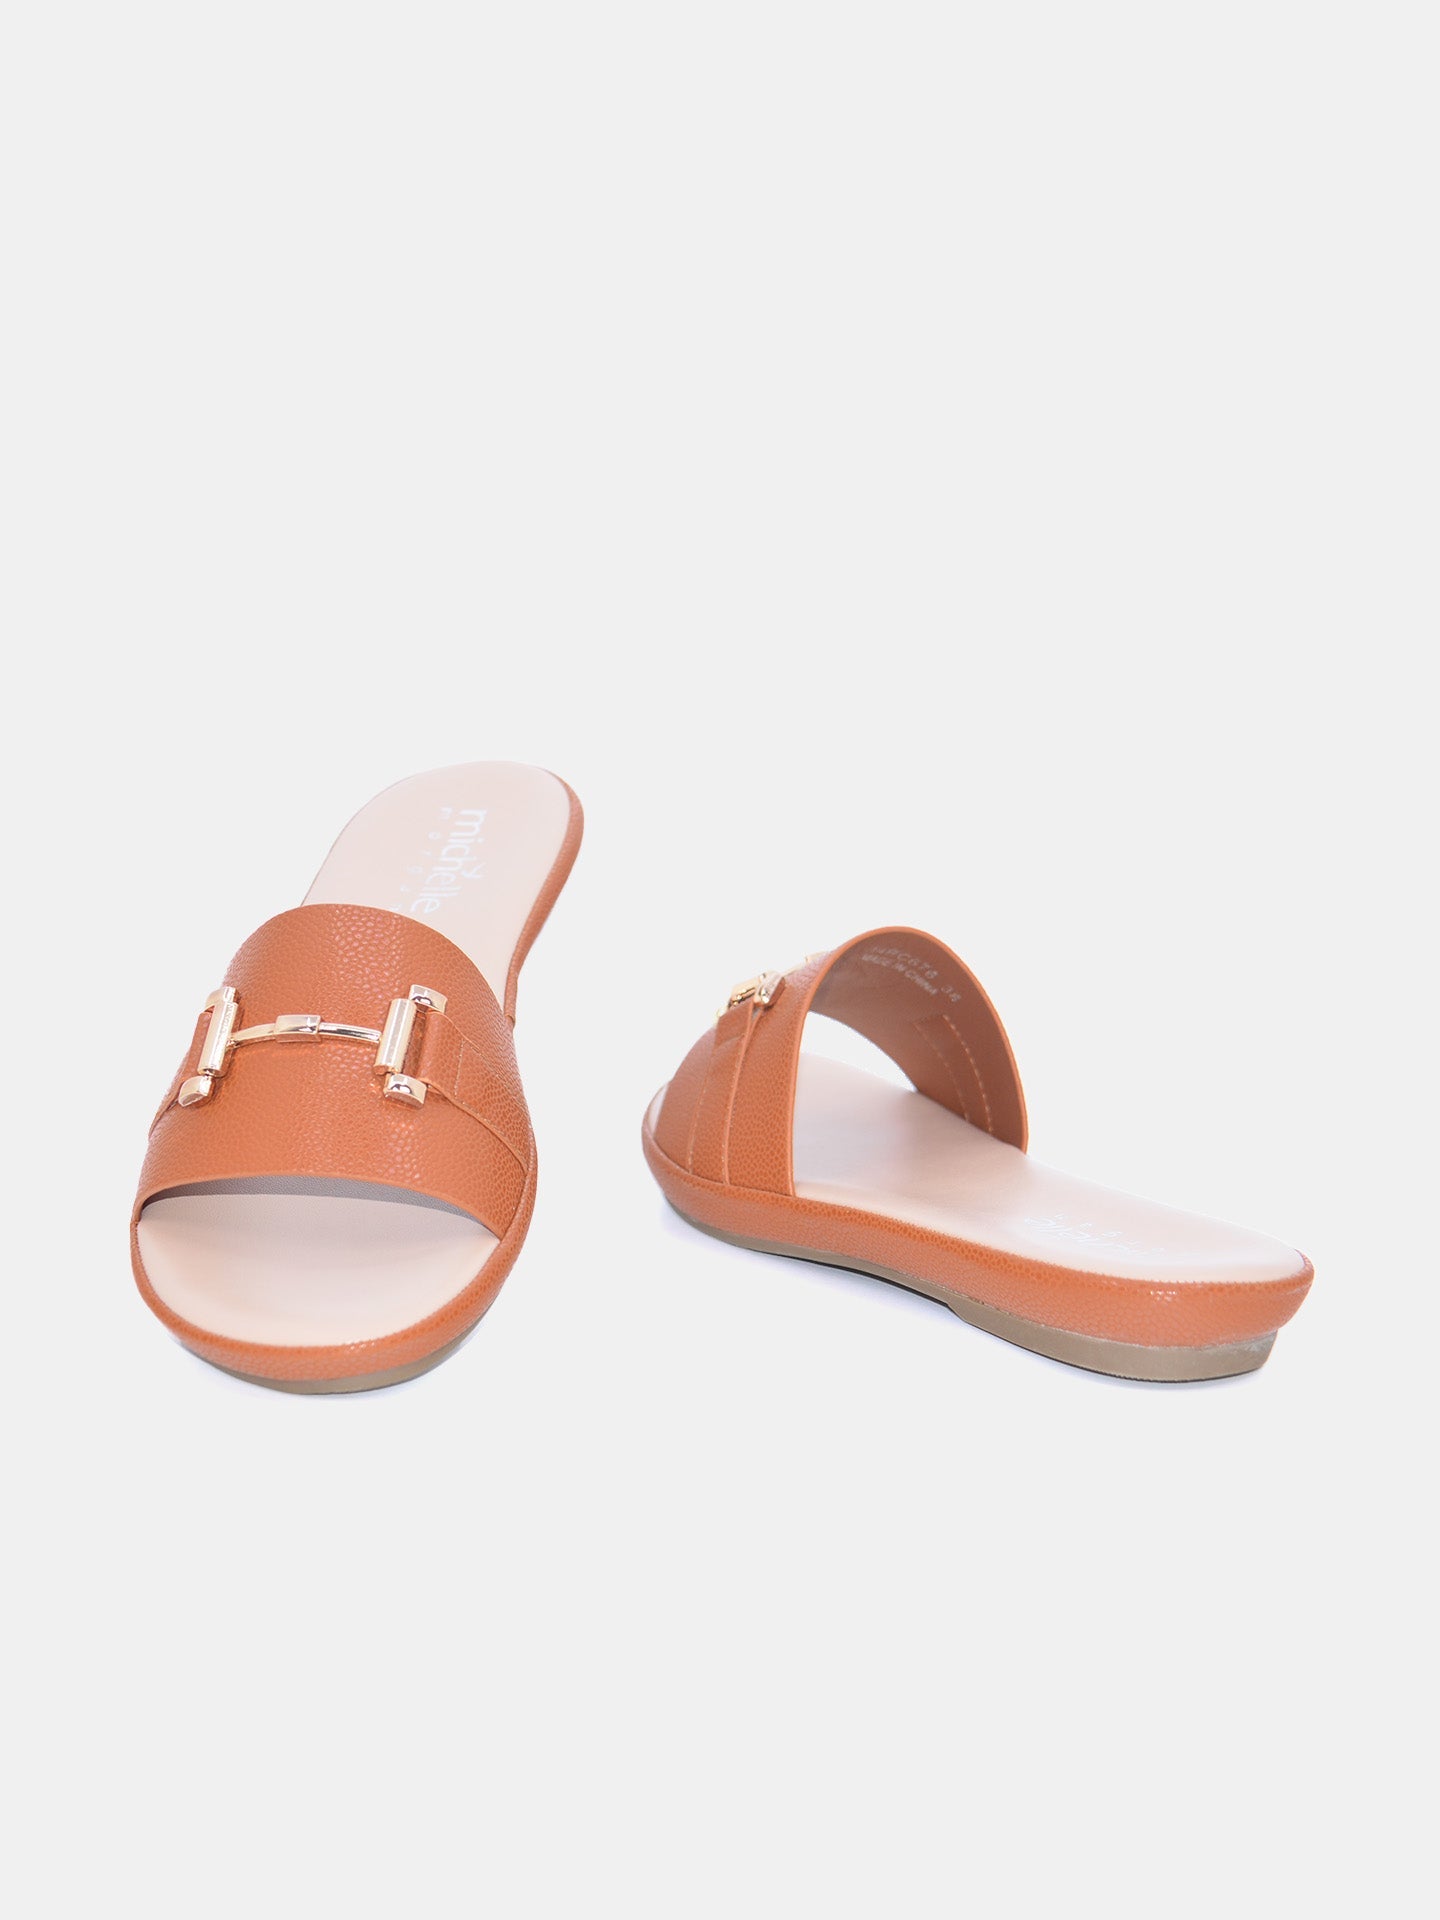 Michelle Morgan 114RC676 Women's Flat Sandals #color_Light Brown